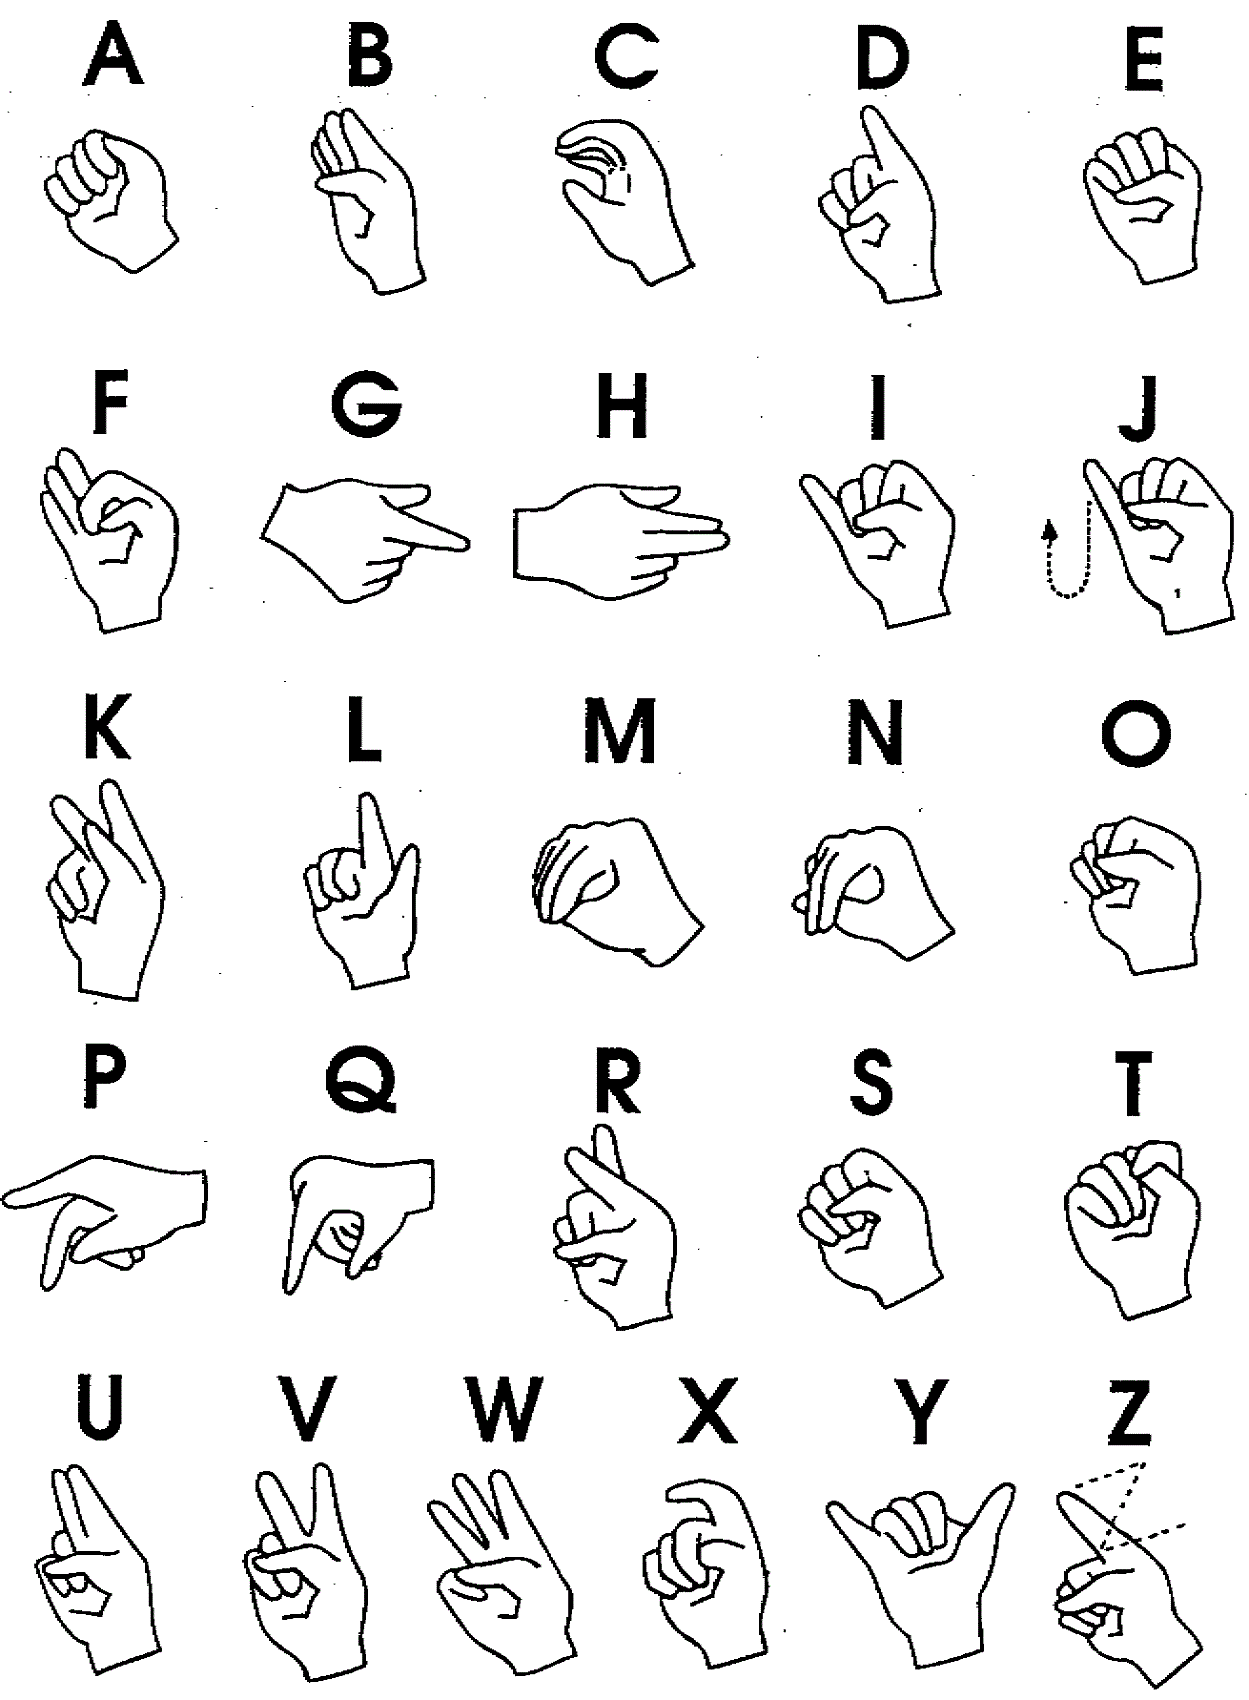 sign language chart printable